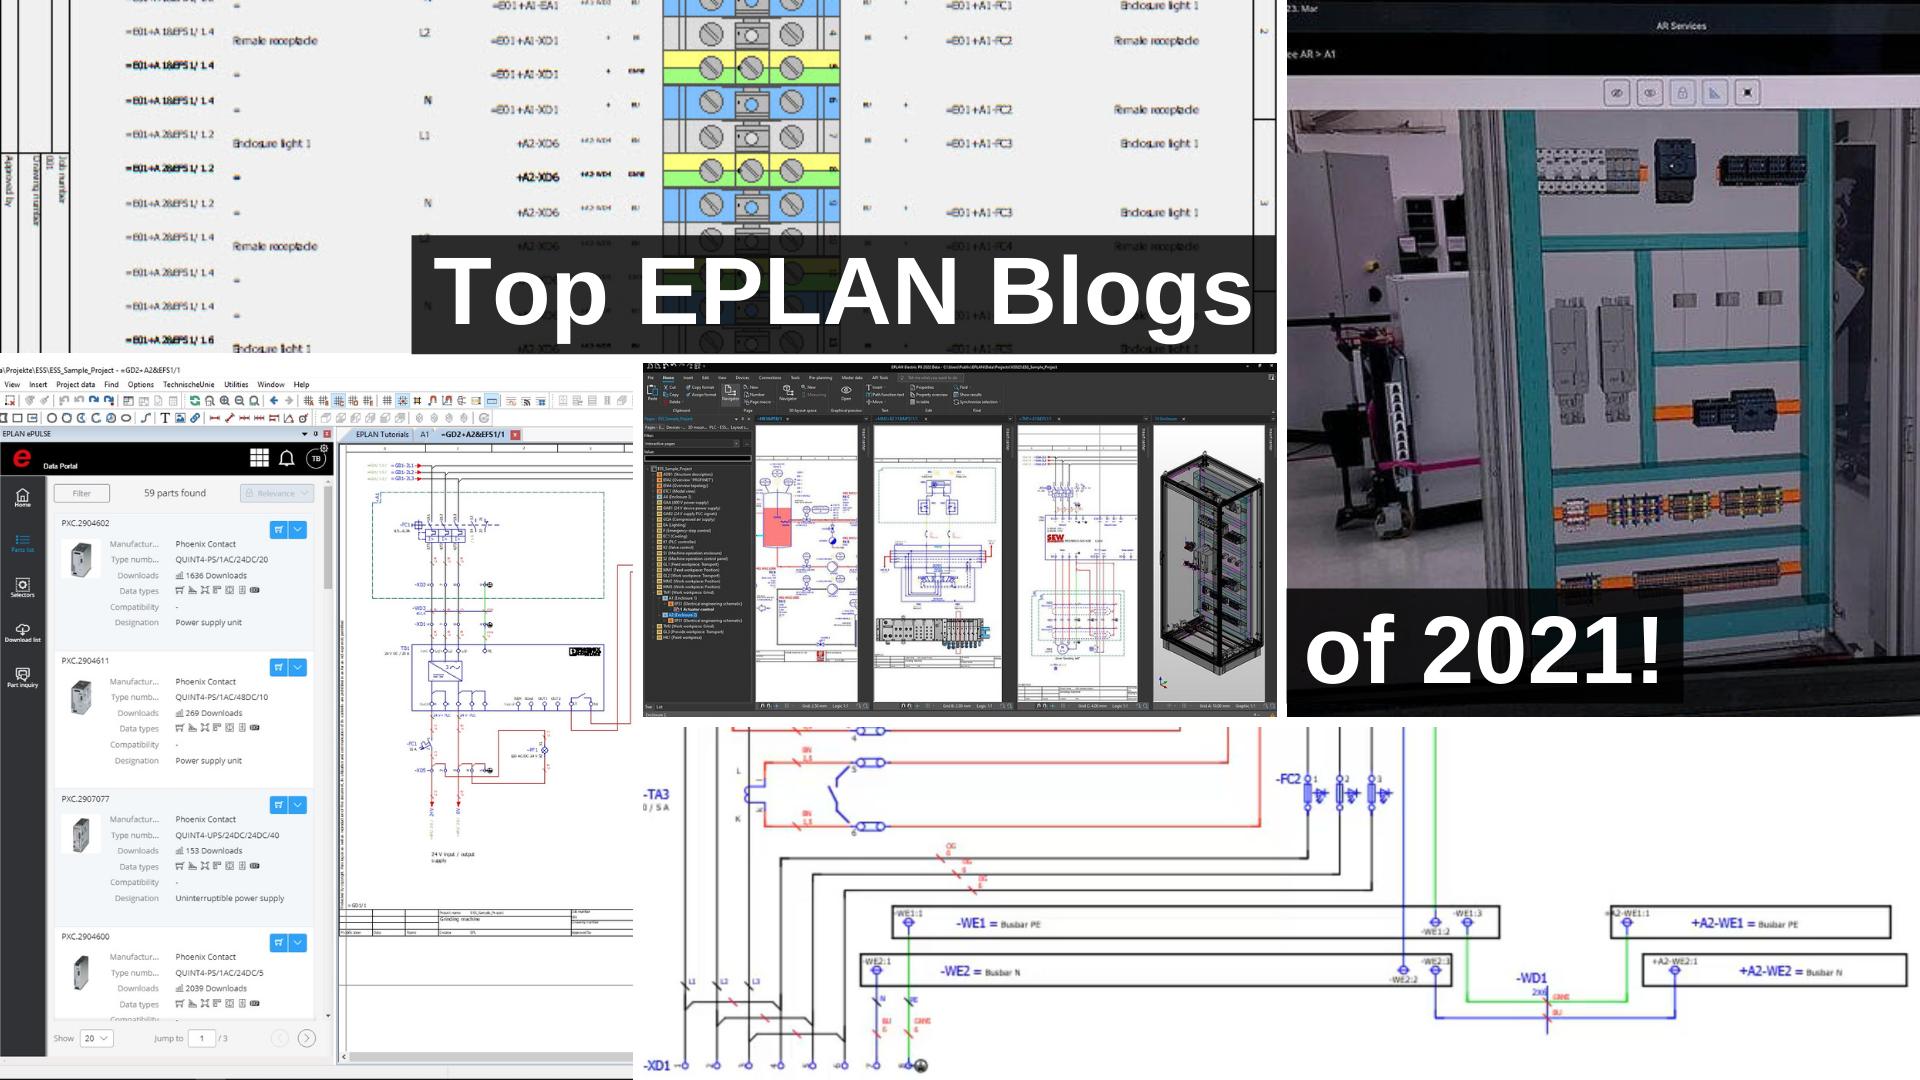 Eplan top blogs